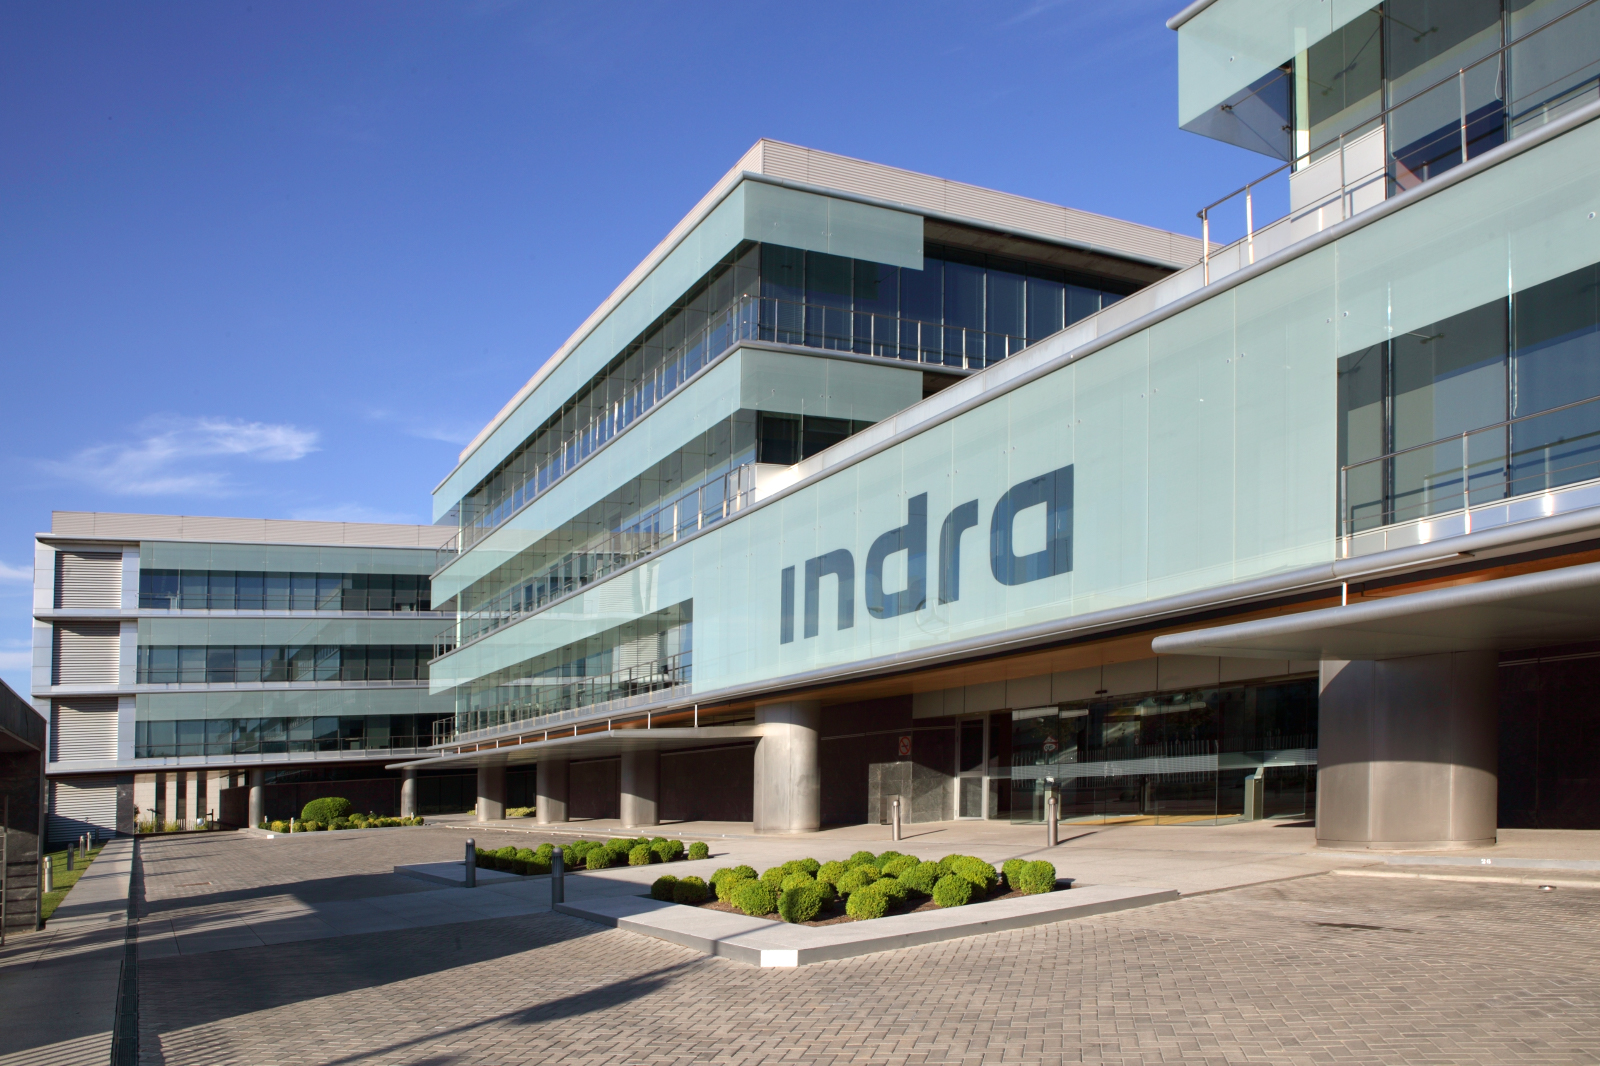 Indra firma un acuerdo vinculante para adquirir la línea de negocio de gestión del tráfico aéreo de Selex es inc, perteneciente a Leonardo